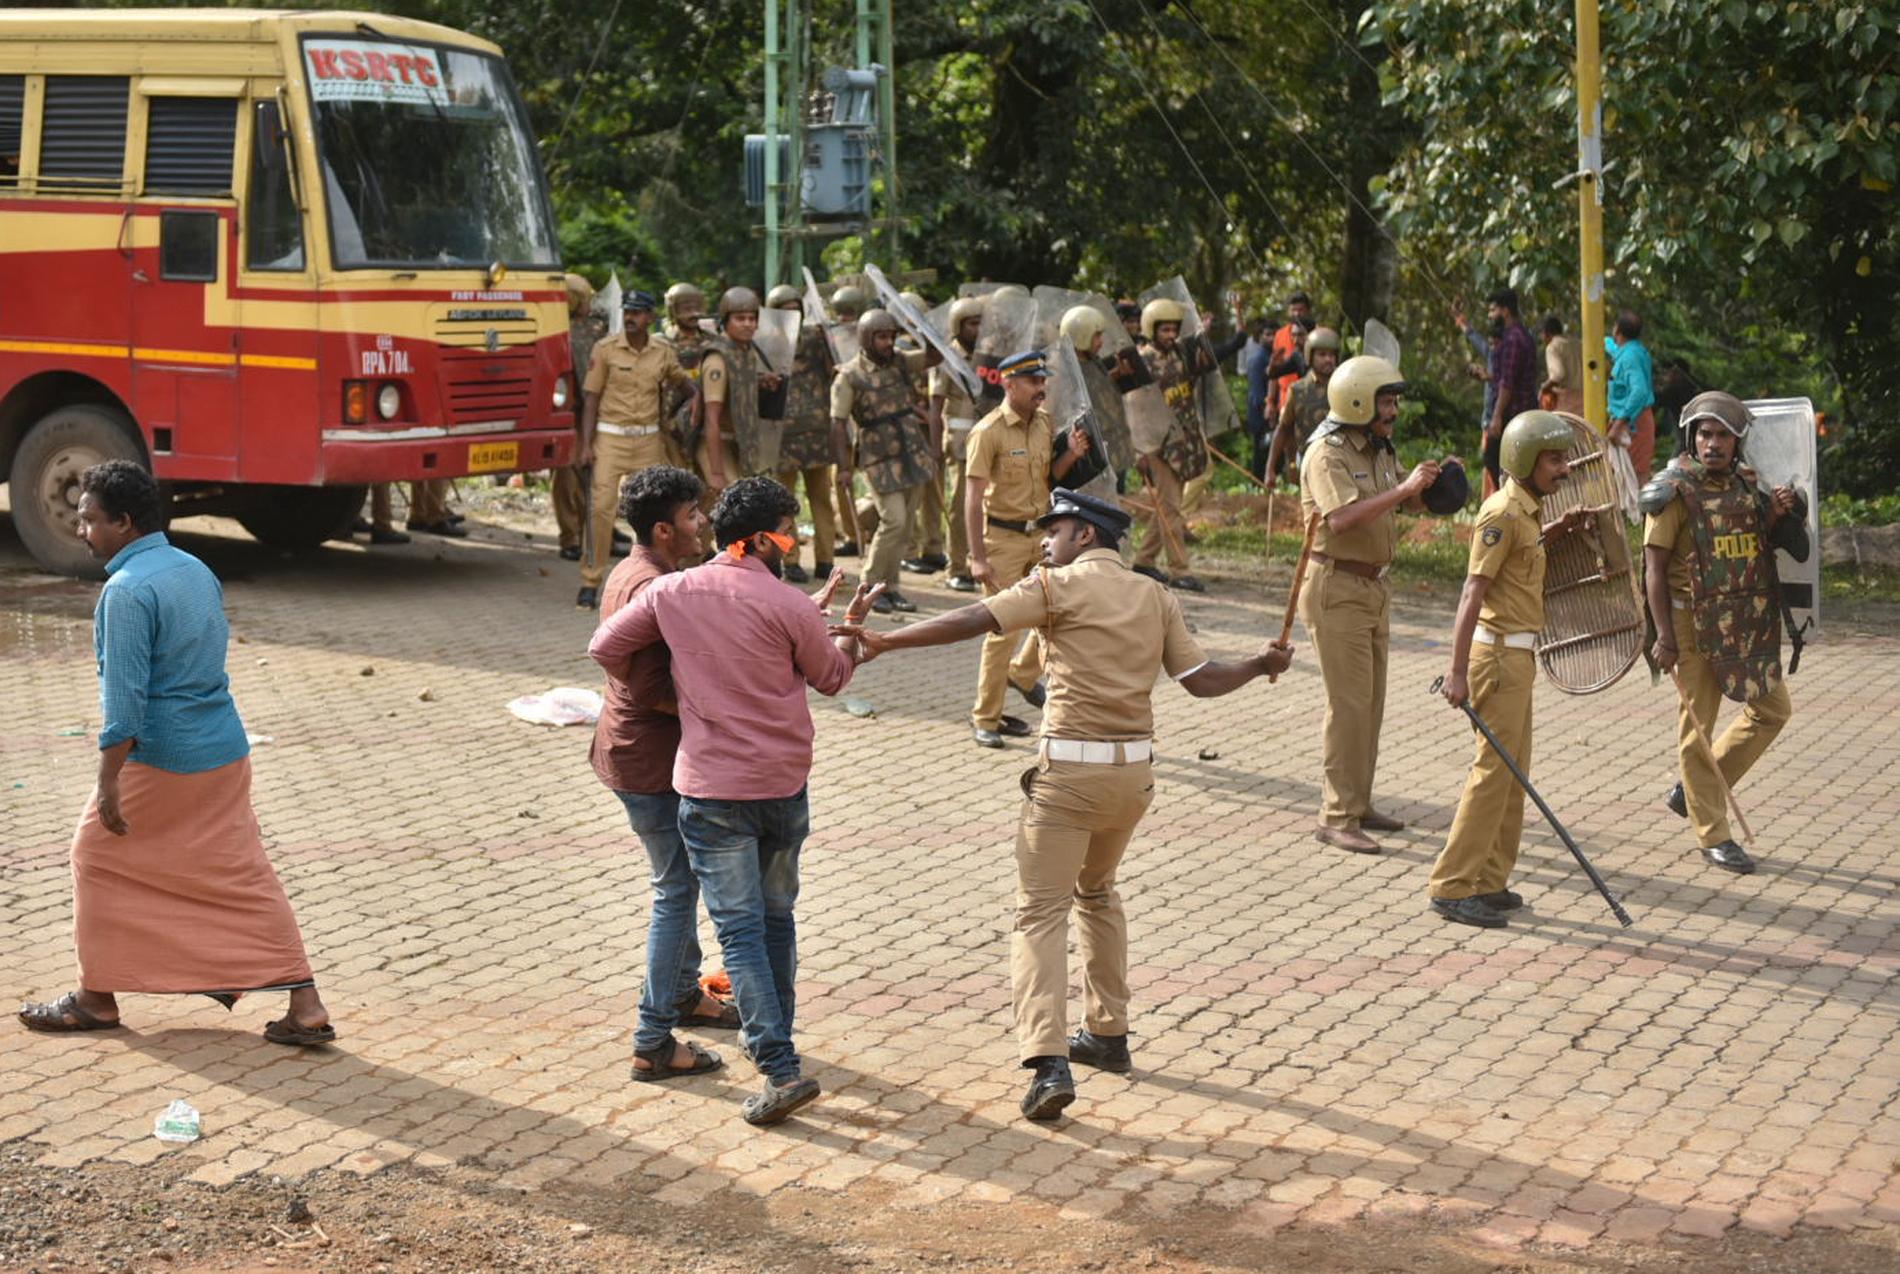 Polis drabbar samman med demonstranter som försöker stoppa kvinnor i "fel" ålder att besöka Sabarimalatemplet i Nilacka i Kerala.